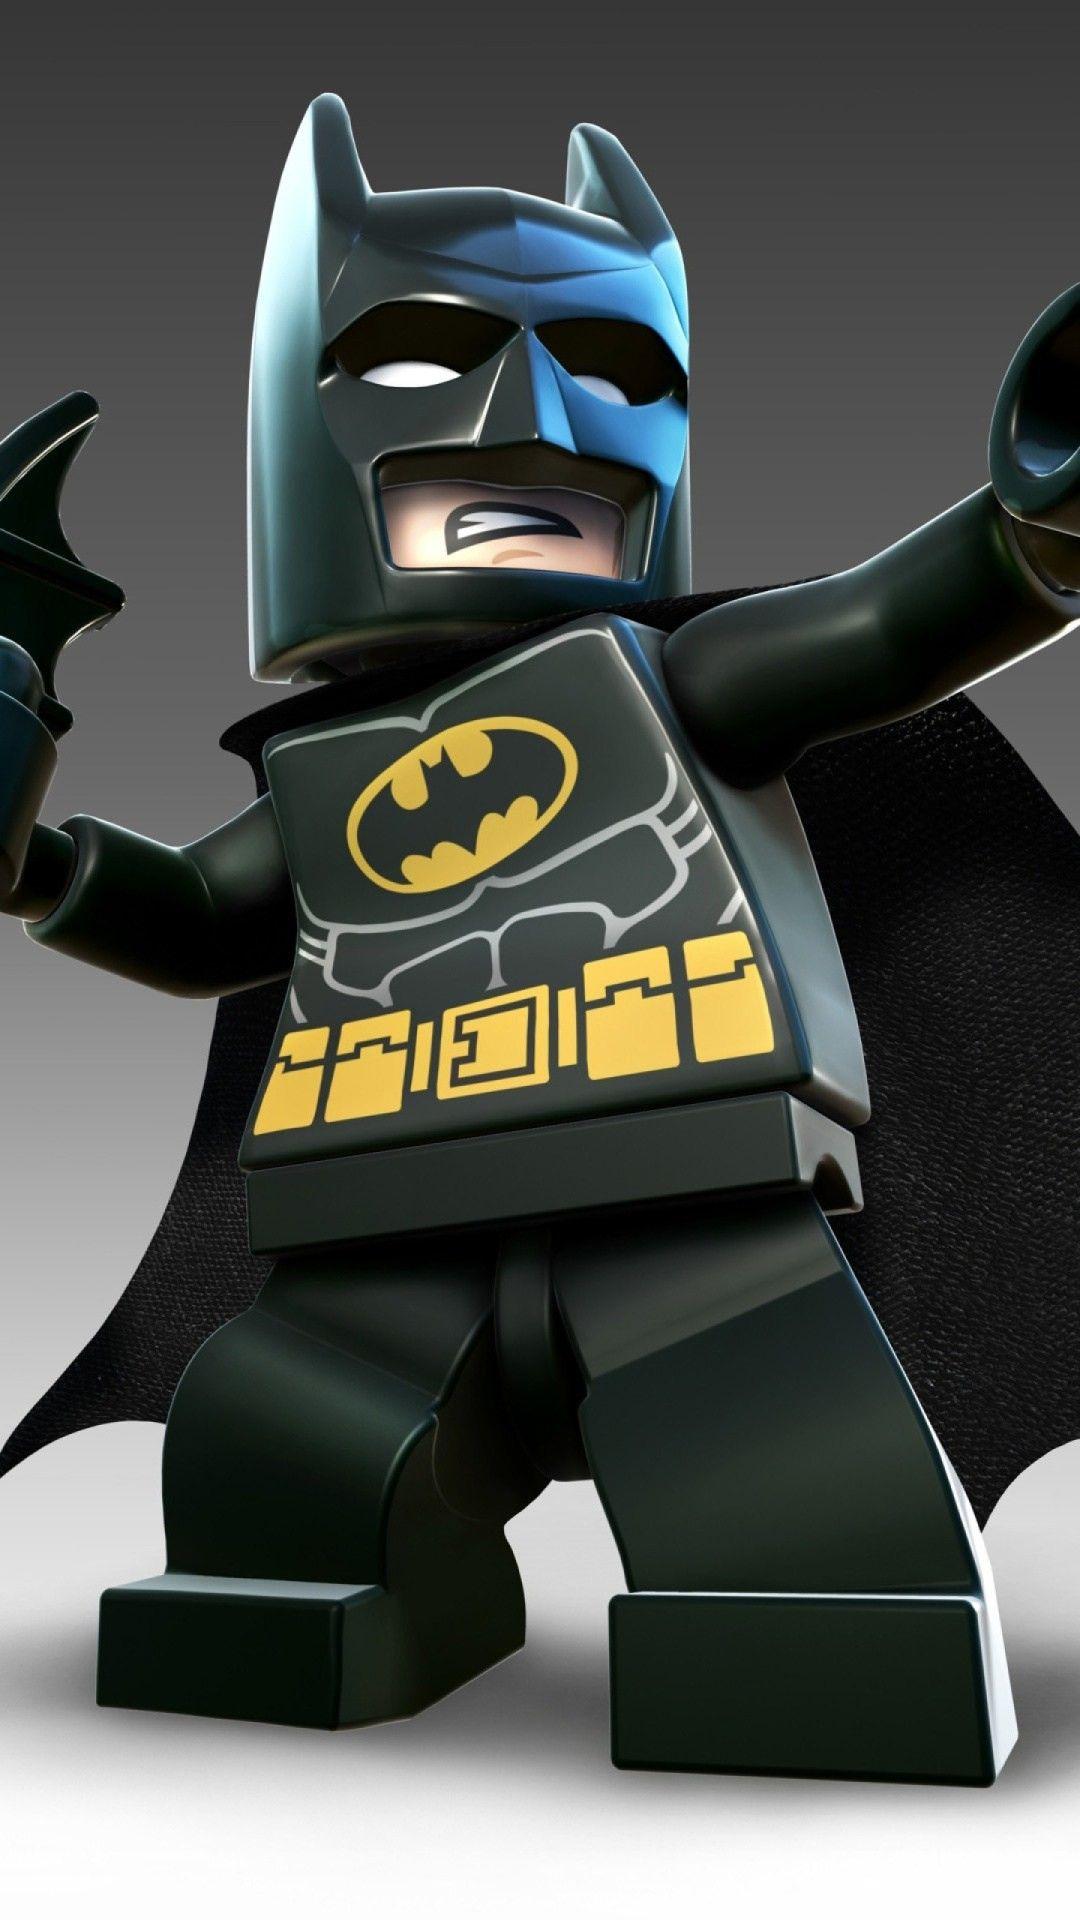 Lego Batman Wallpaper. Lego batman wallpaper